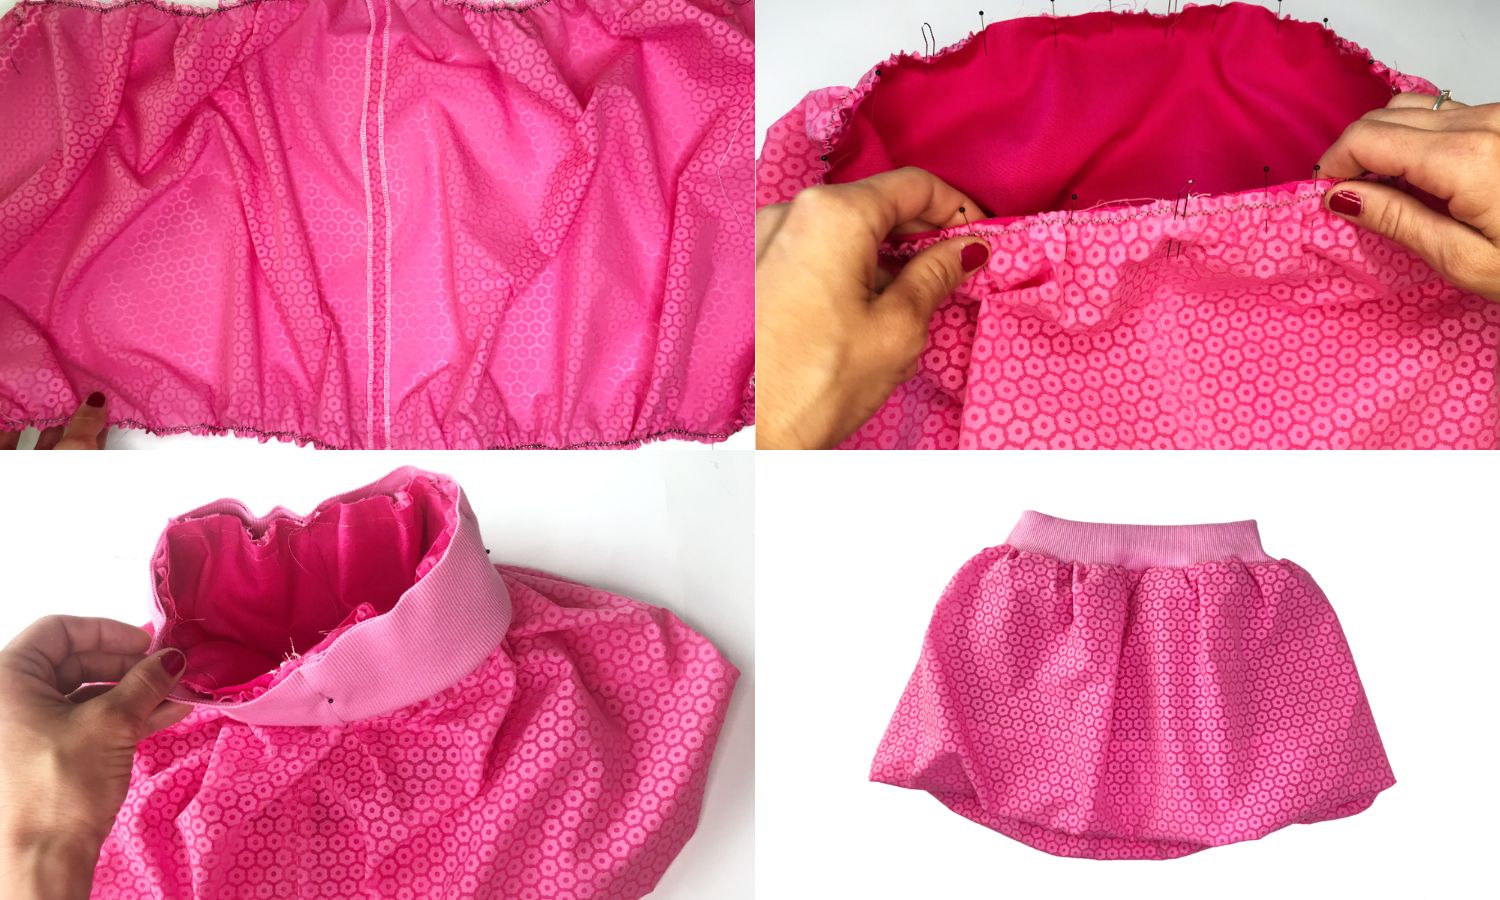 balloon panel-skirt | Balloon skirt, Draping pattern, Draping fashion